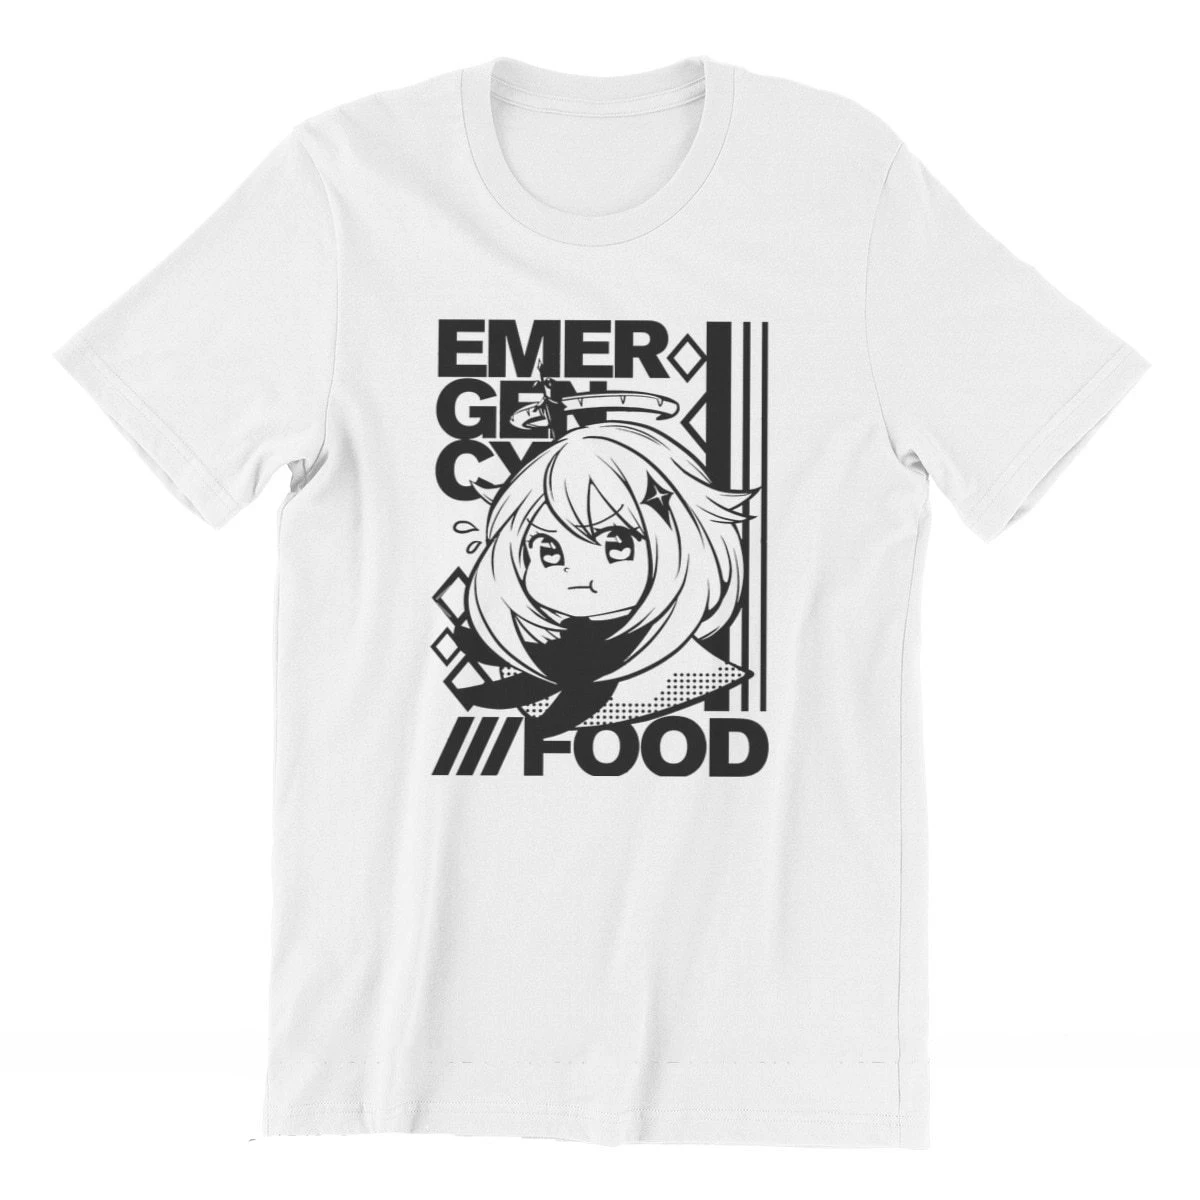 

Классическая футболка Genshin Impact аварийная еда Paimon с круглым вырезом популярная футболка большого размера футболки из чистого хлопка с коротким рукавом